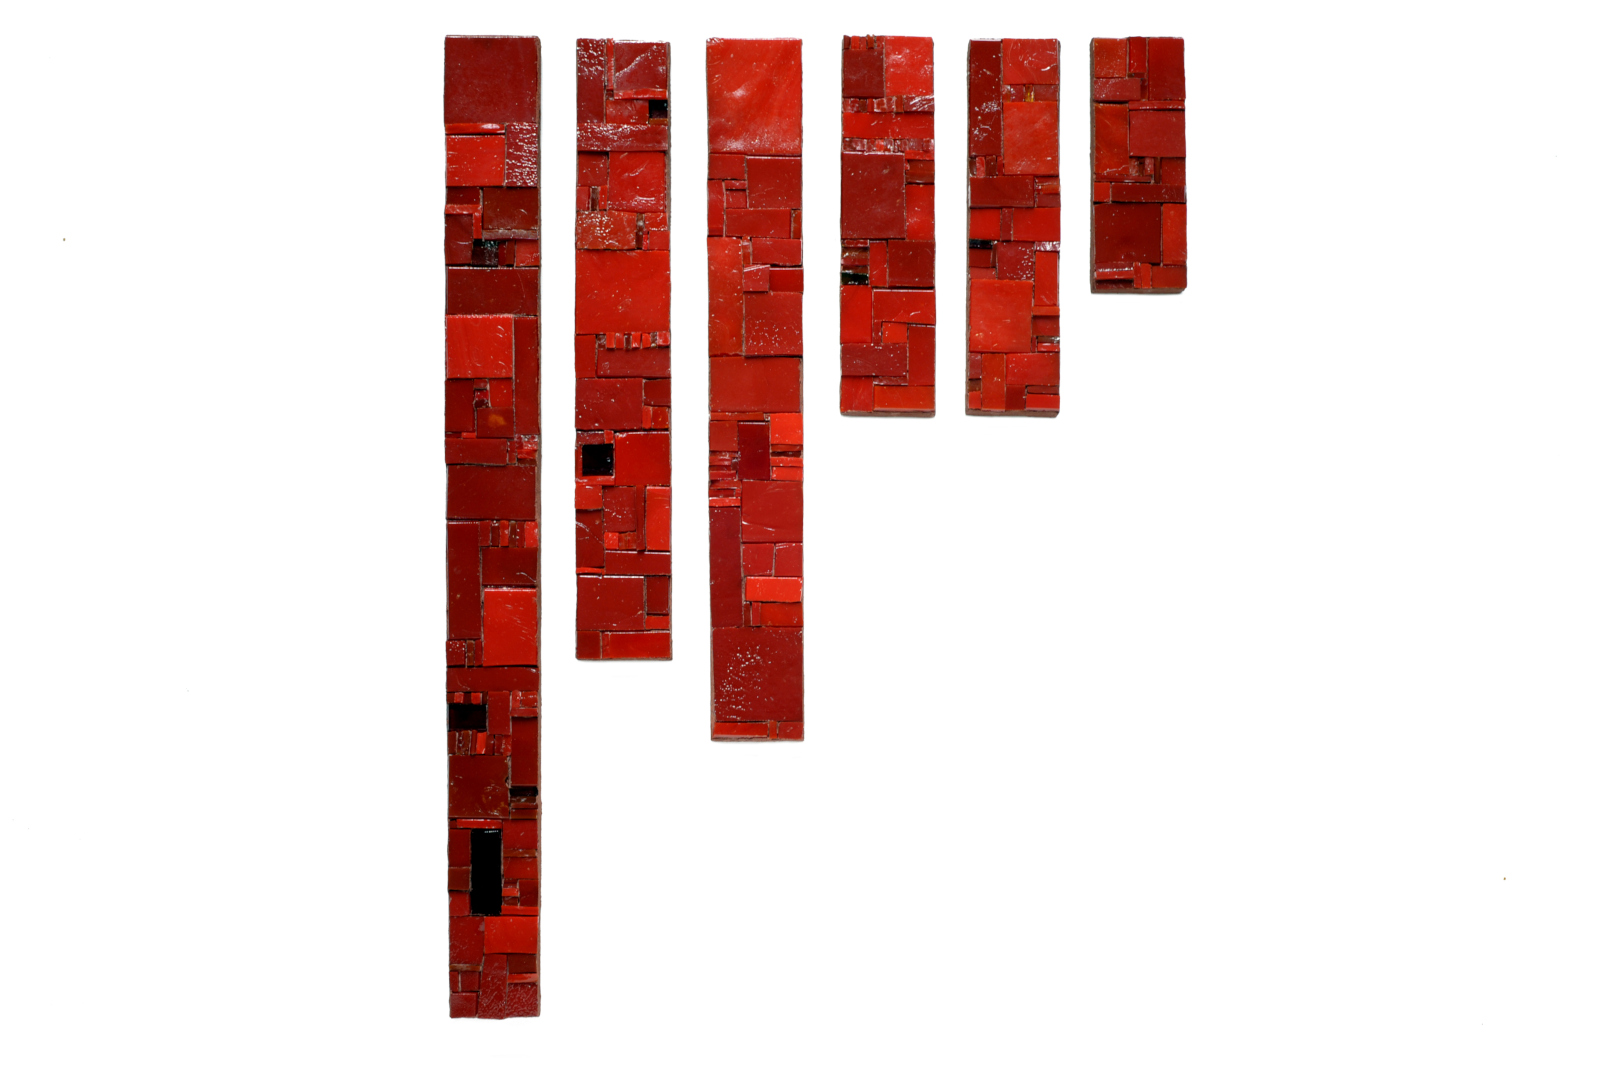 Ensemble de 6 barres verticales de mosaïque rà dominante rouge avec un travail de relief et d'assemblage de formes géométriques